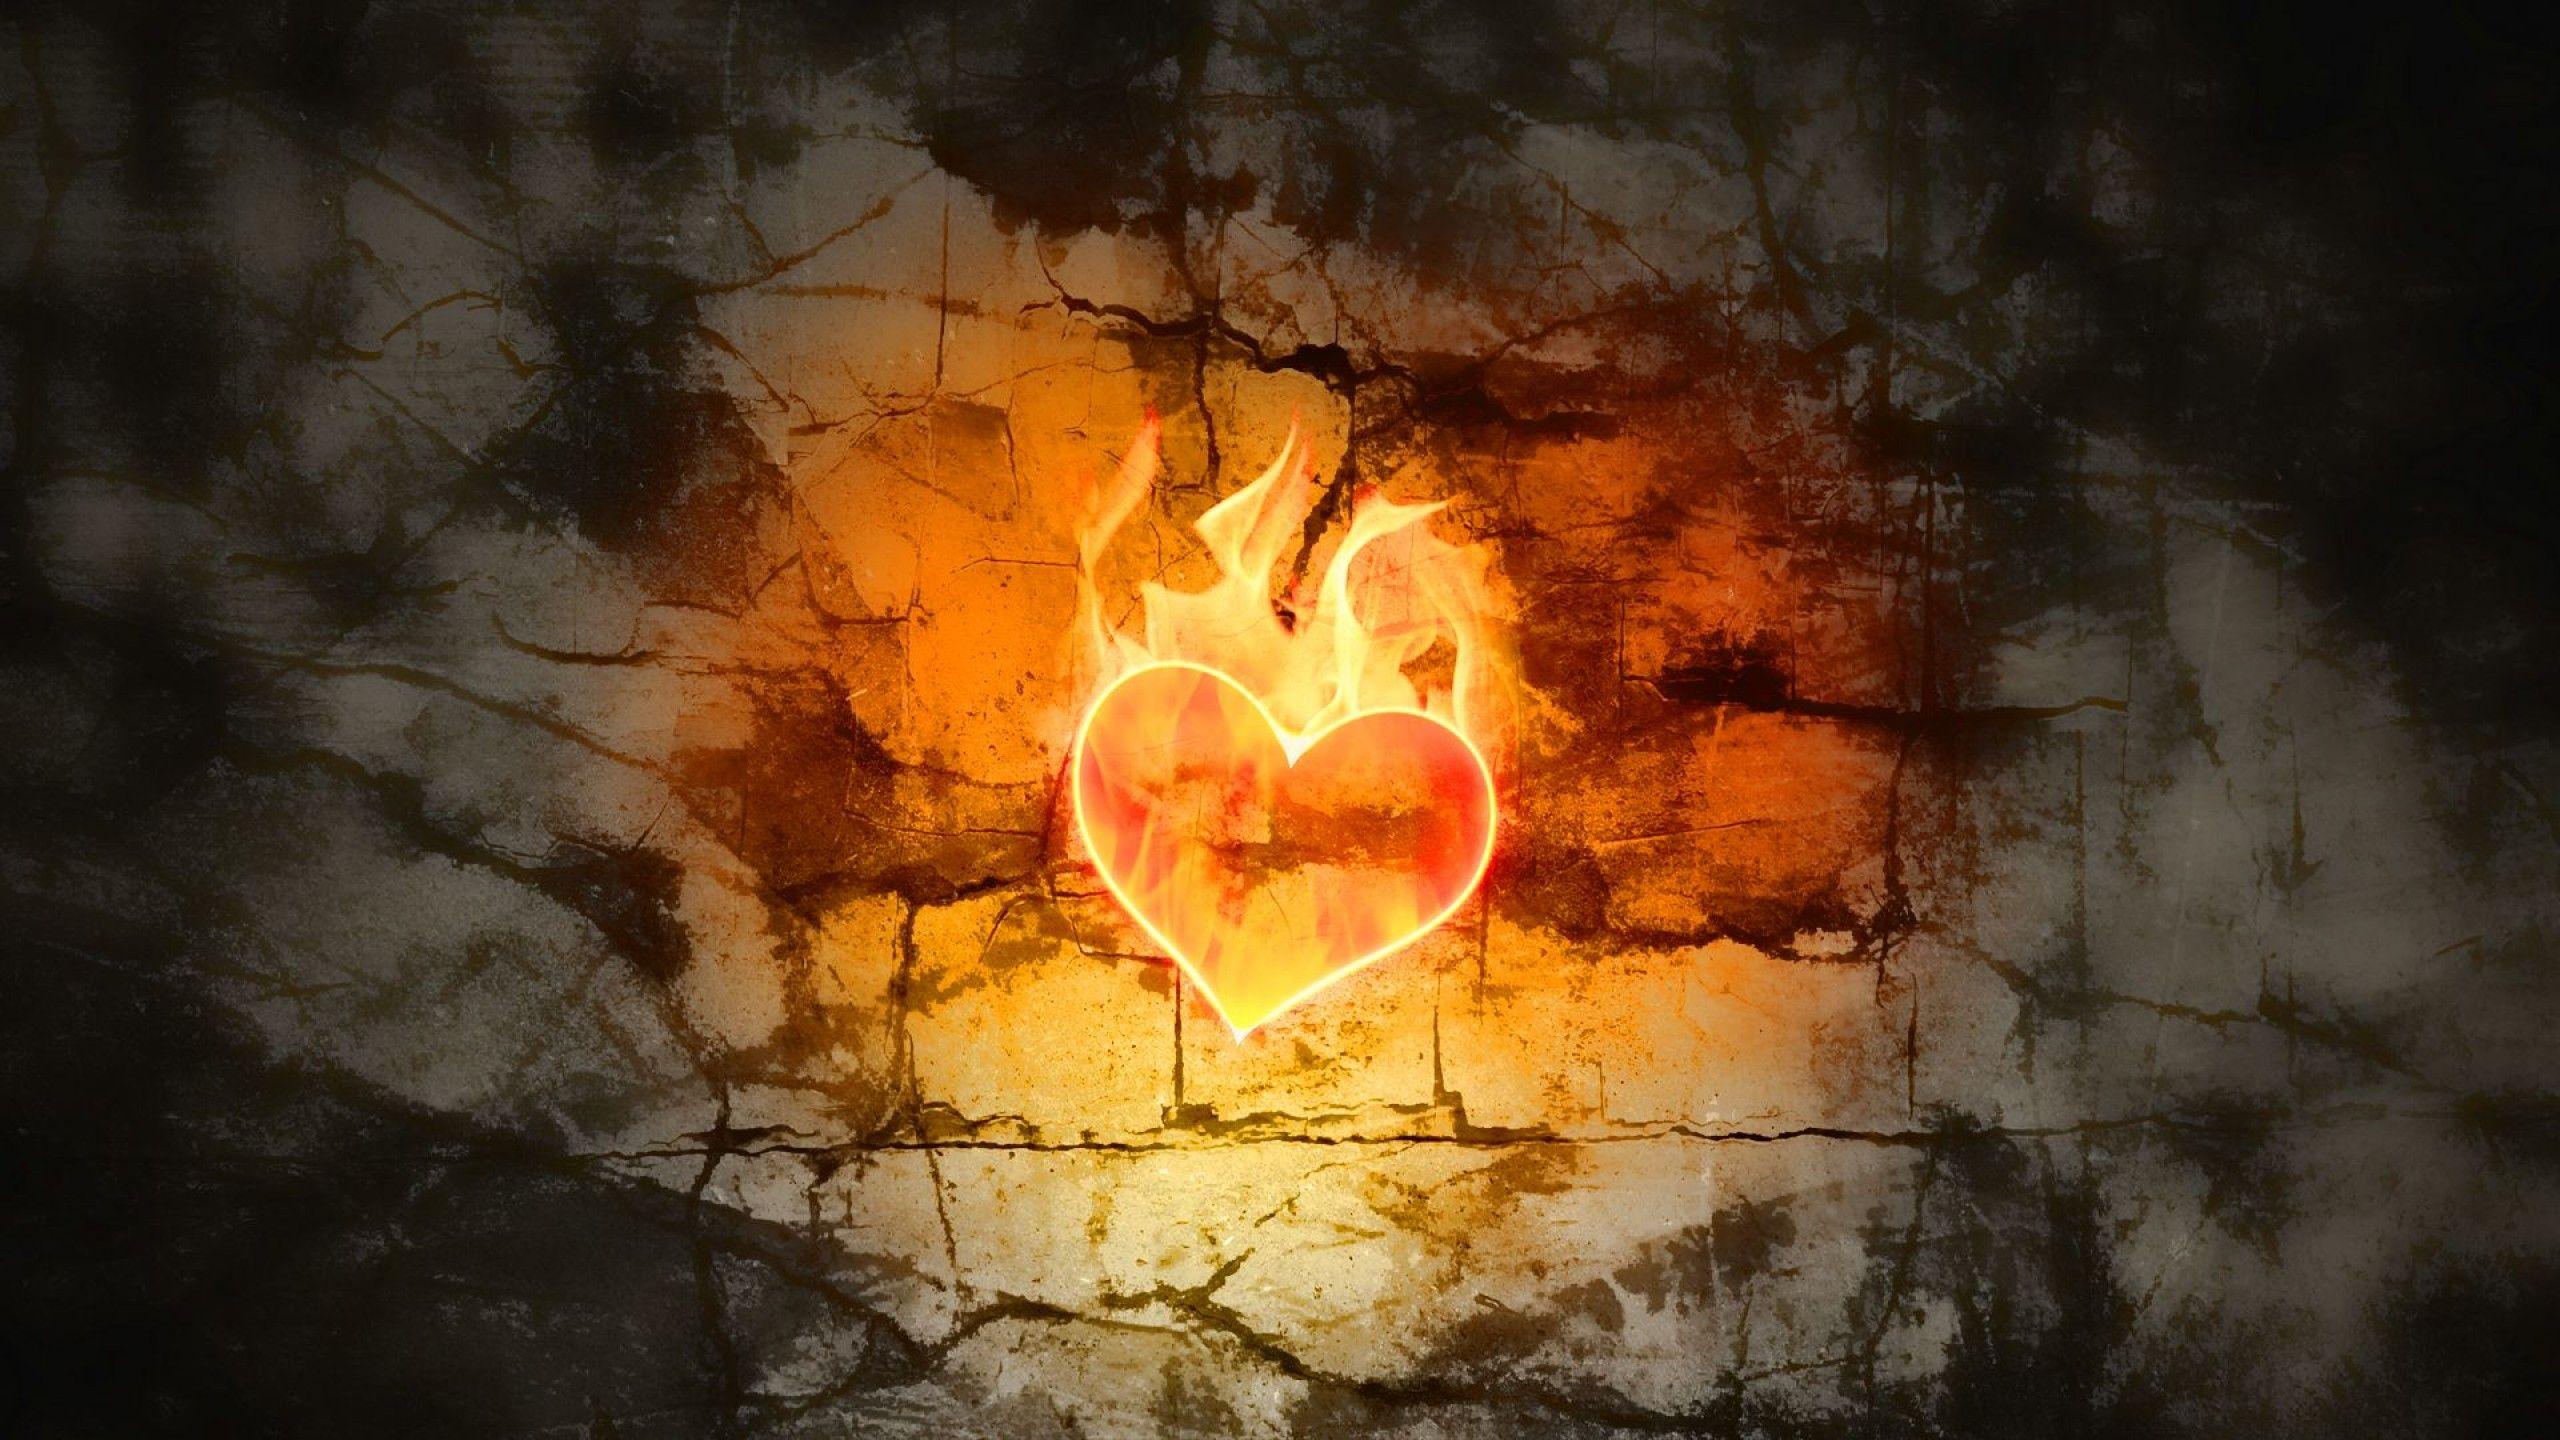 Fire Heart IPhone Wallpaper HD - IPhone Wallpapers : iPhone Wallpapers |  Heart iphone wallpaper, Cool wallpapers for phones, Fire heart